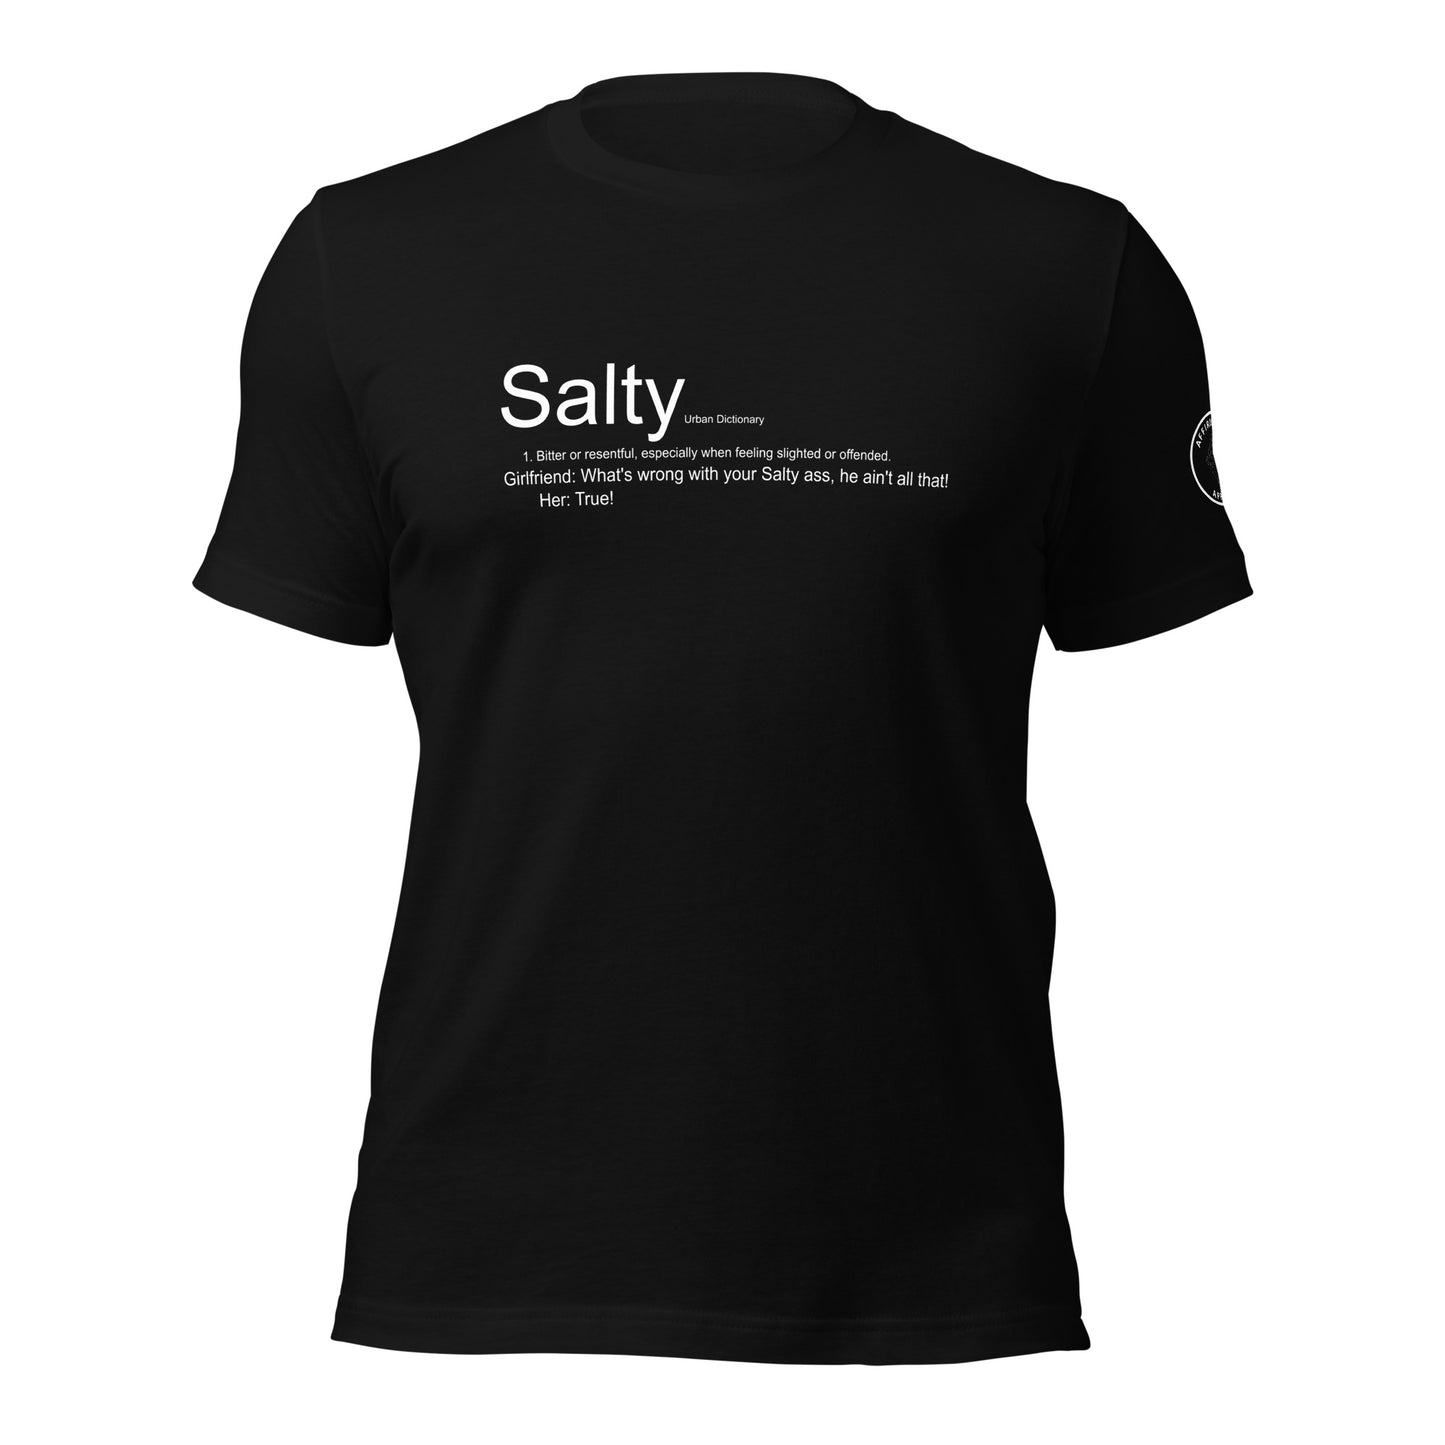 Salty - men's